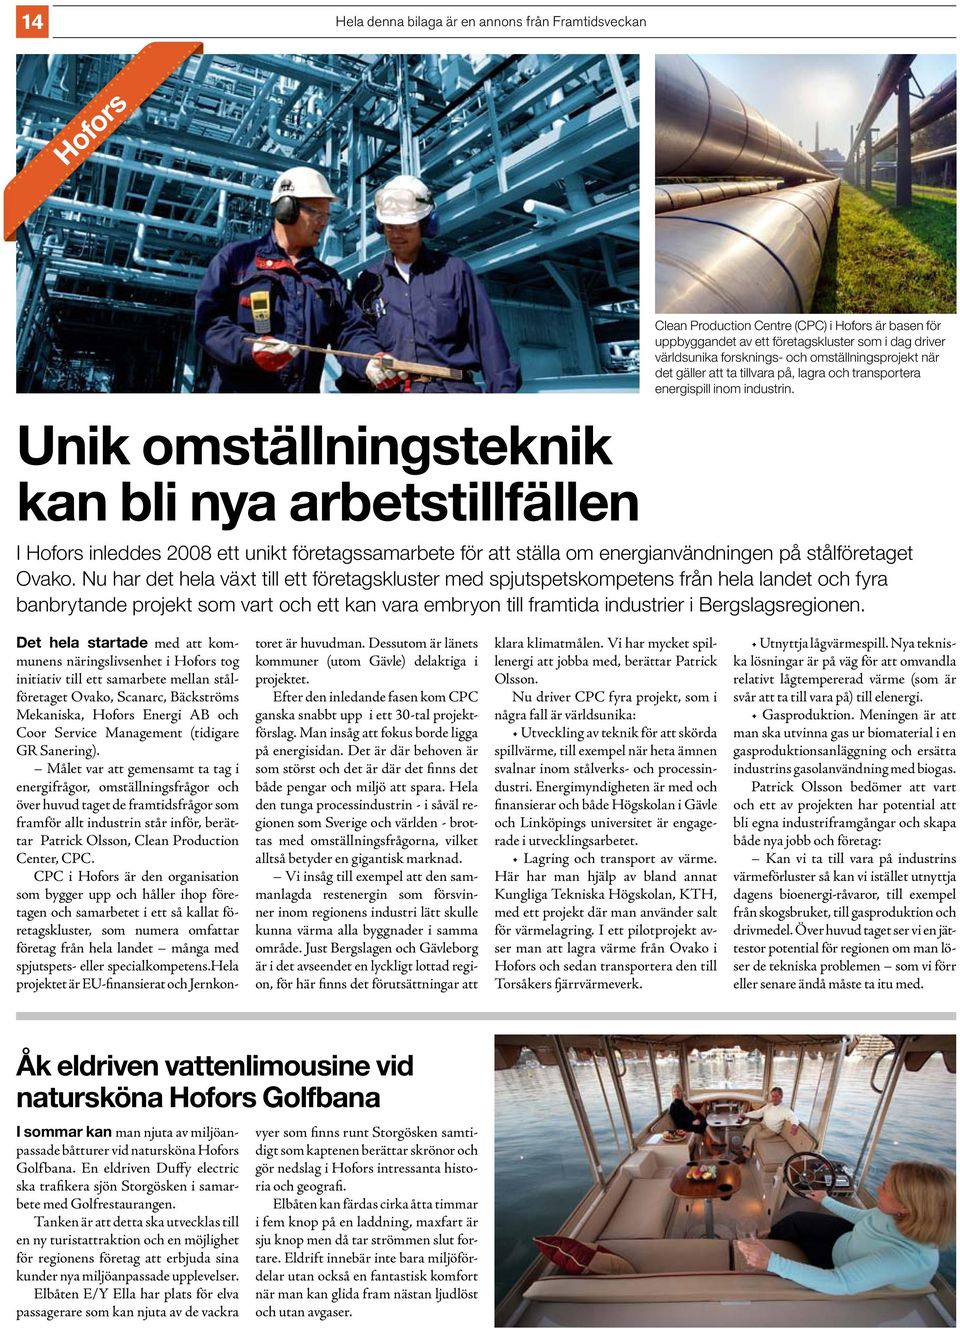 I Hofors inleddes 2008 ett unikt företagssamarbete för att ställa om energianvändningen på stålföretaget Ovako.